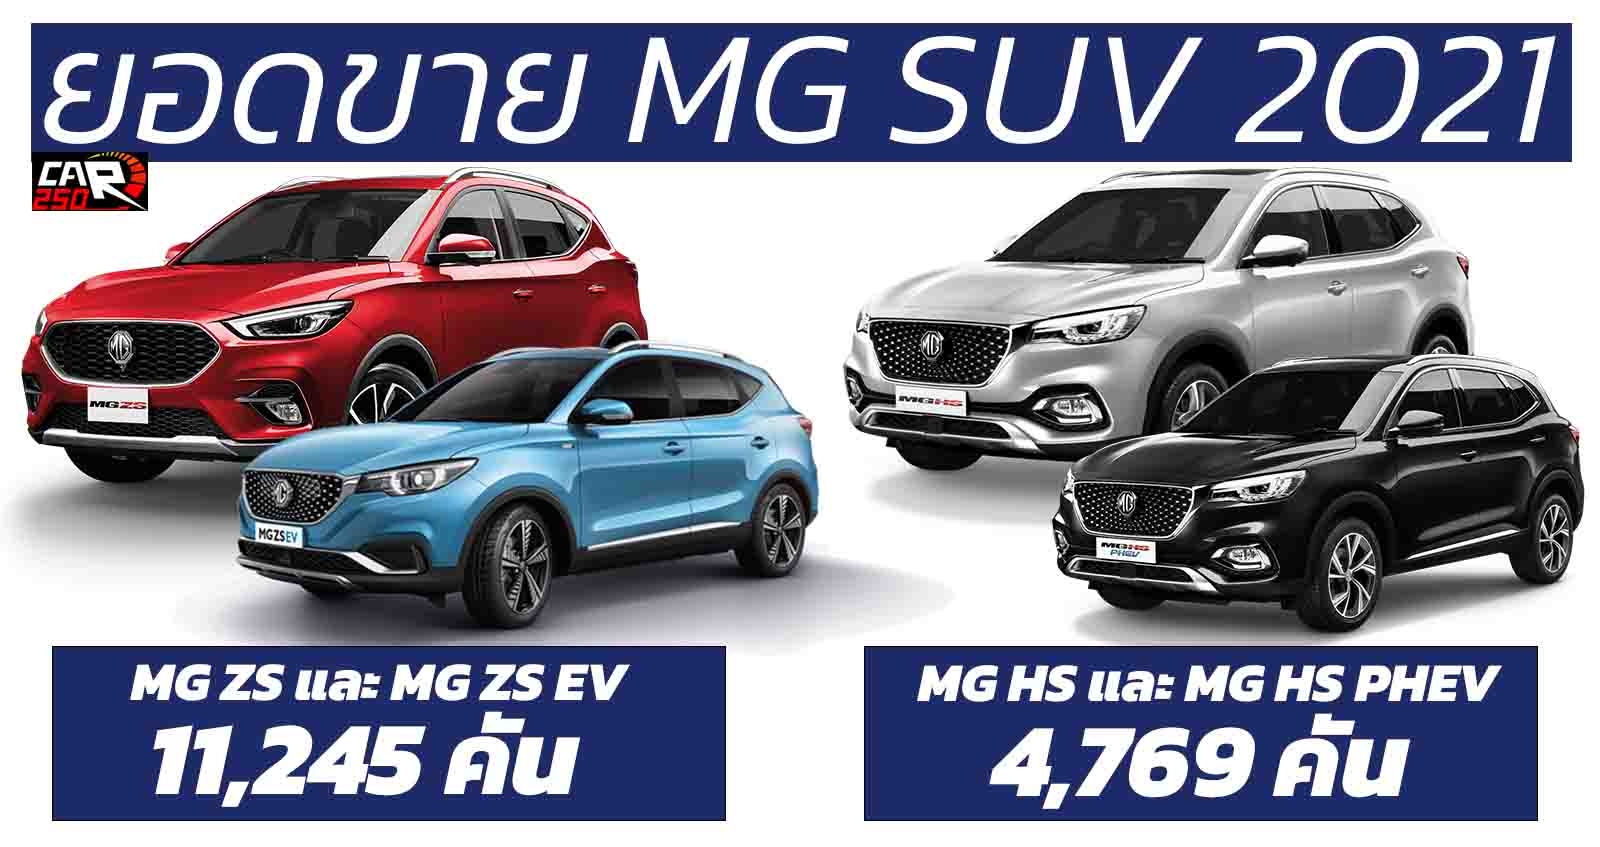 เผยยอดขาย MG SUV ประเทศไทย 16,014 คัน ประจำปี 2021